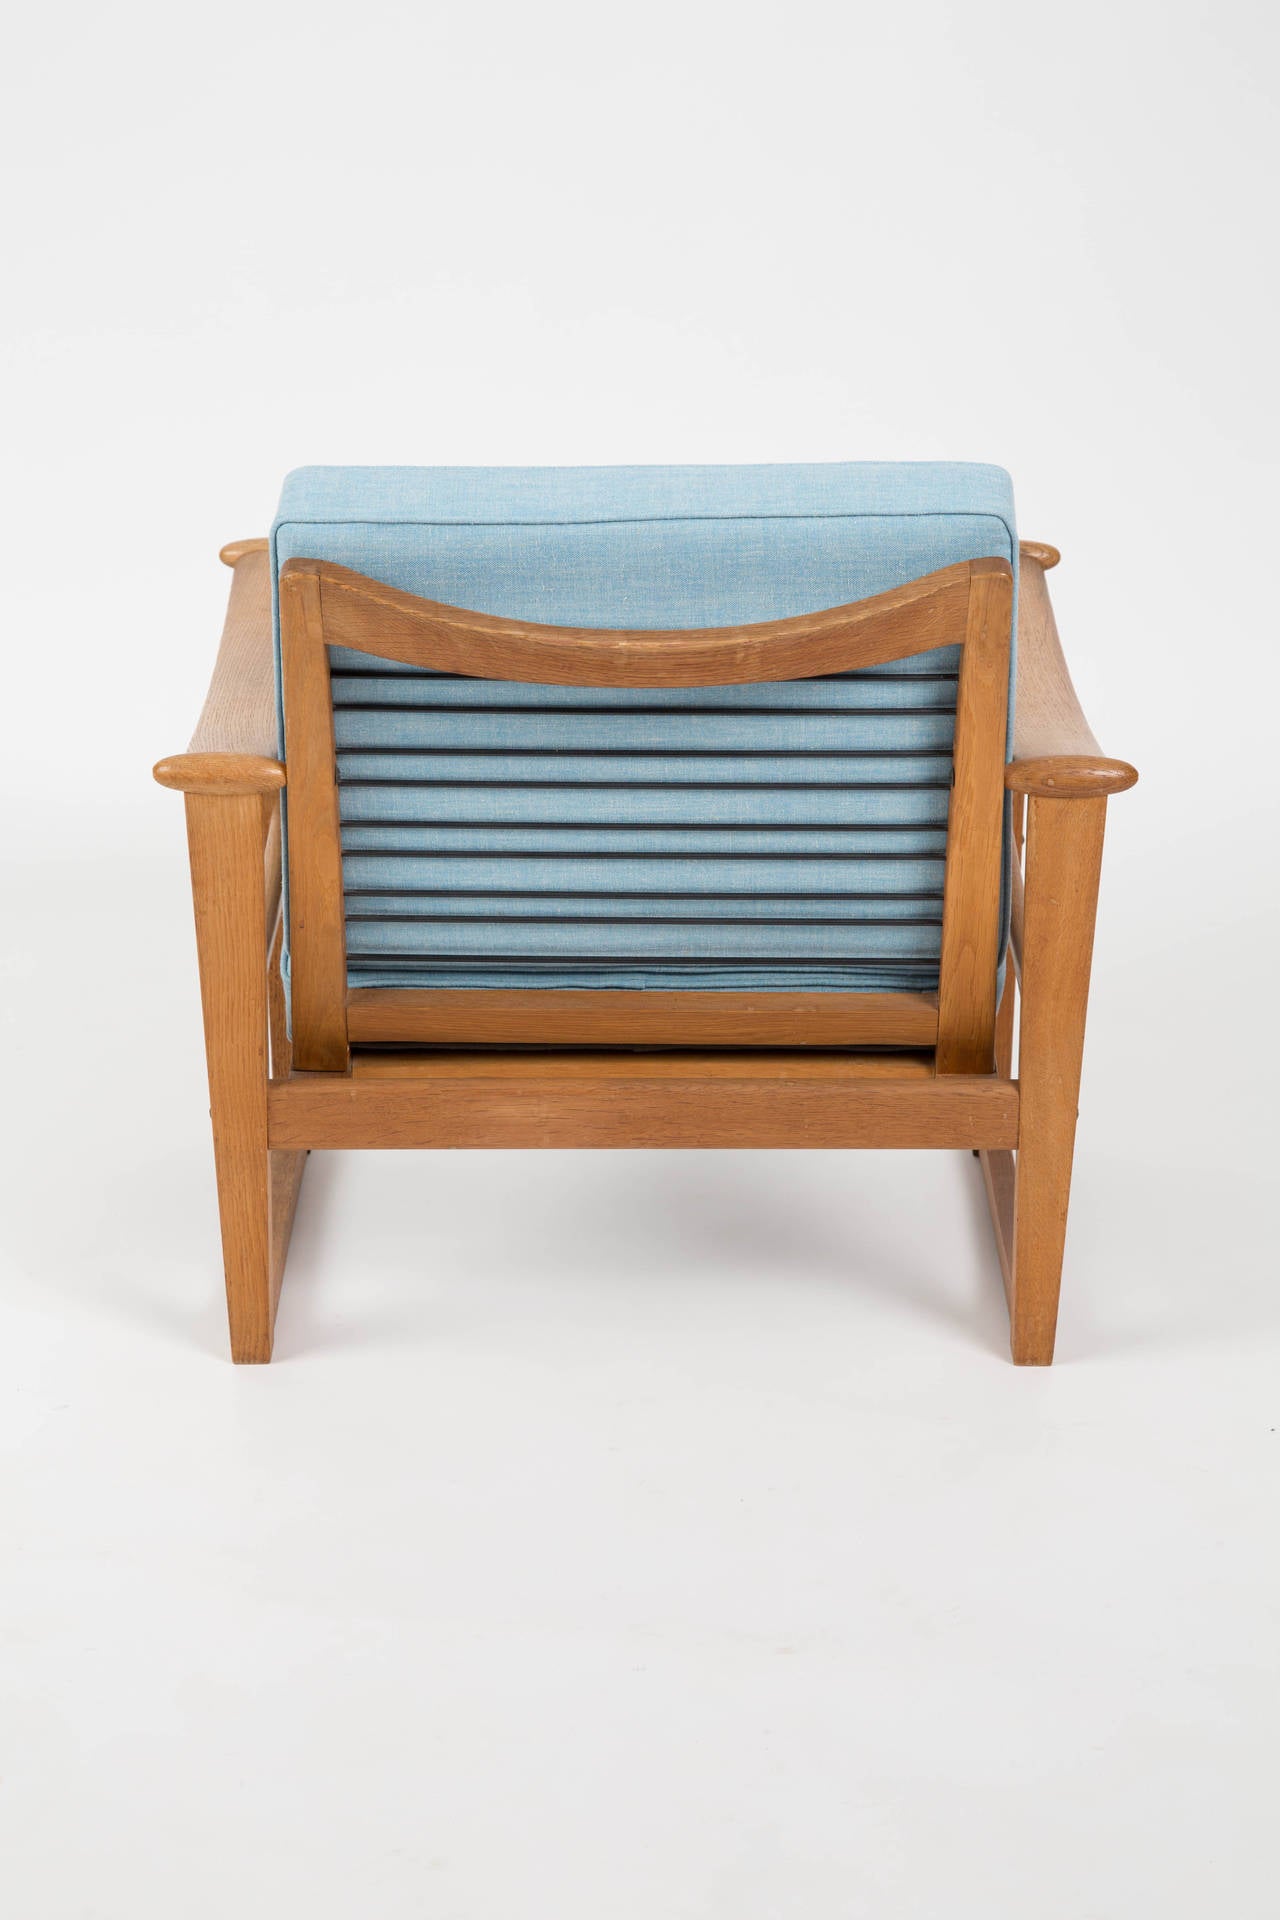 Scandinavian Modern In the style of Finn Juhl Set of Oak Chairs for Pastoe designed by Nissen For Sale